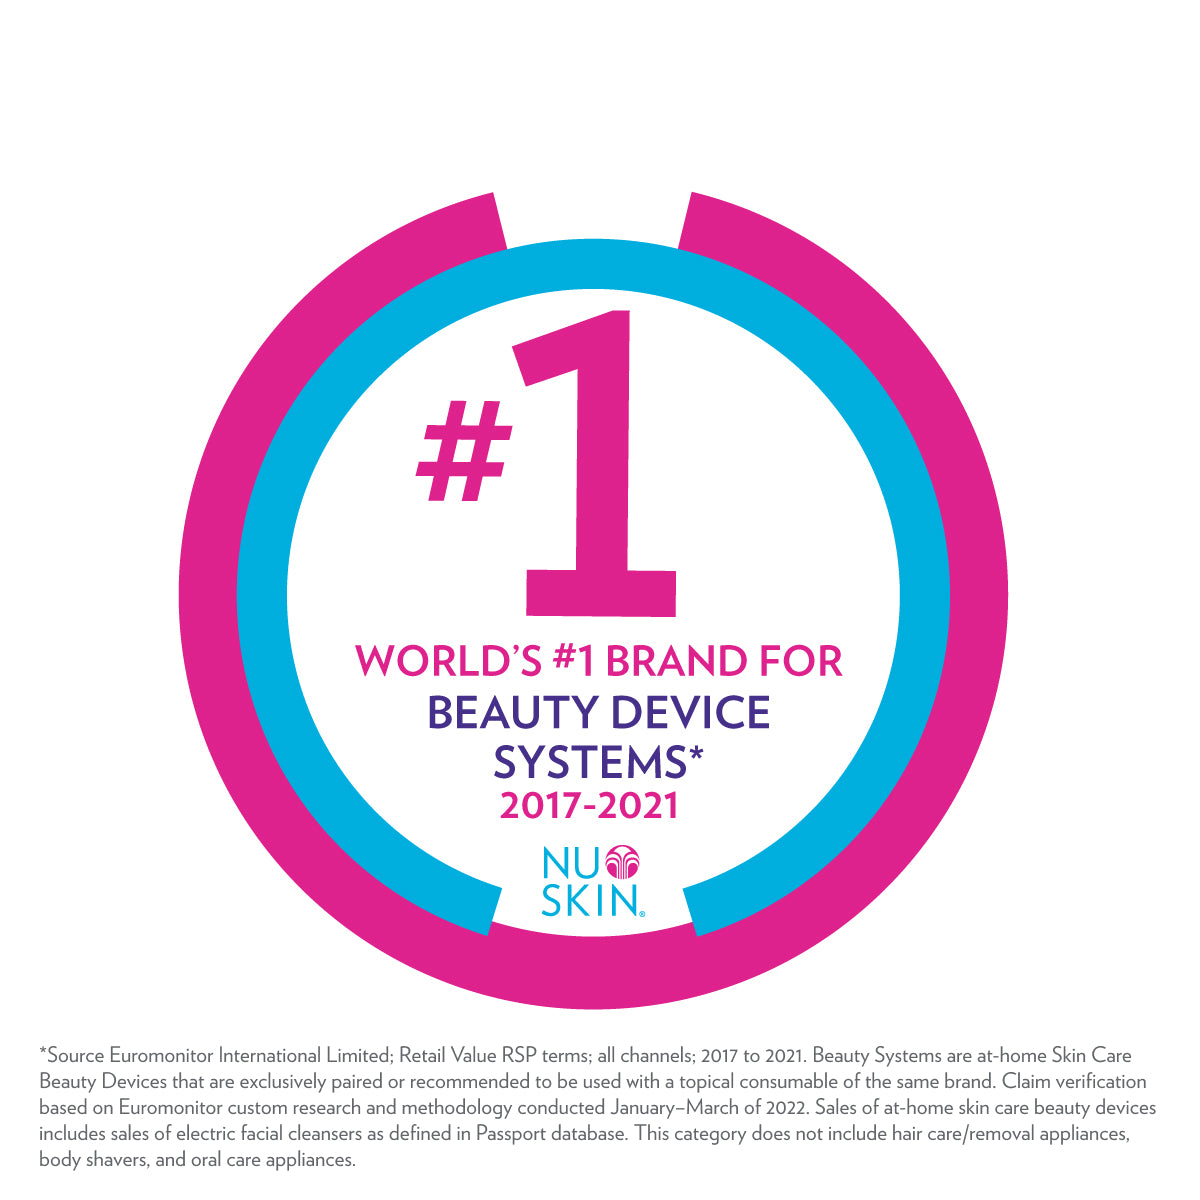 Nu Skin ist die weltweite Nr. 1 bei den Home Spa Beauty Device Systems. Dazu gehört auch ageLOC Boost.